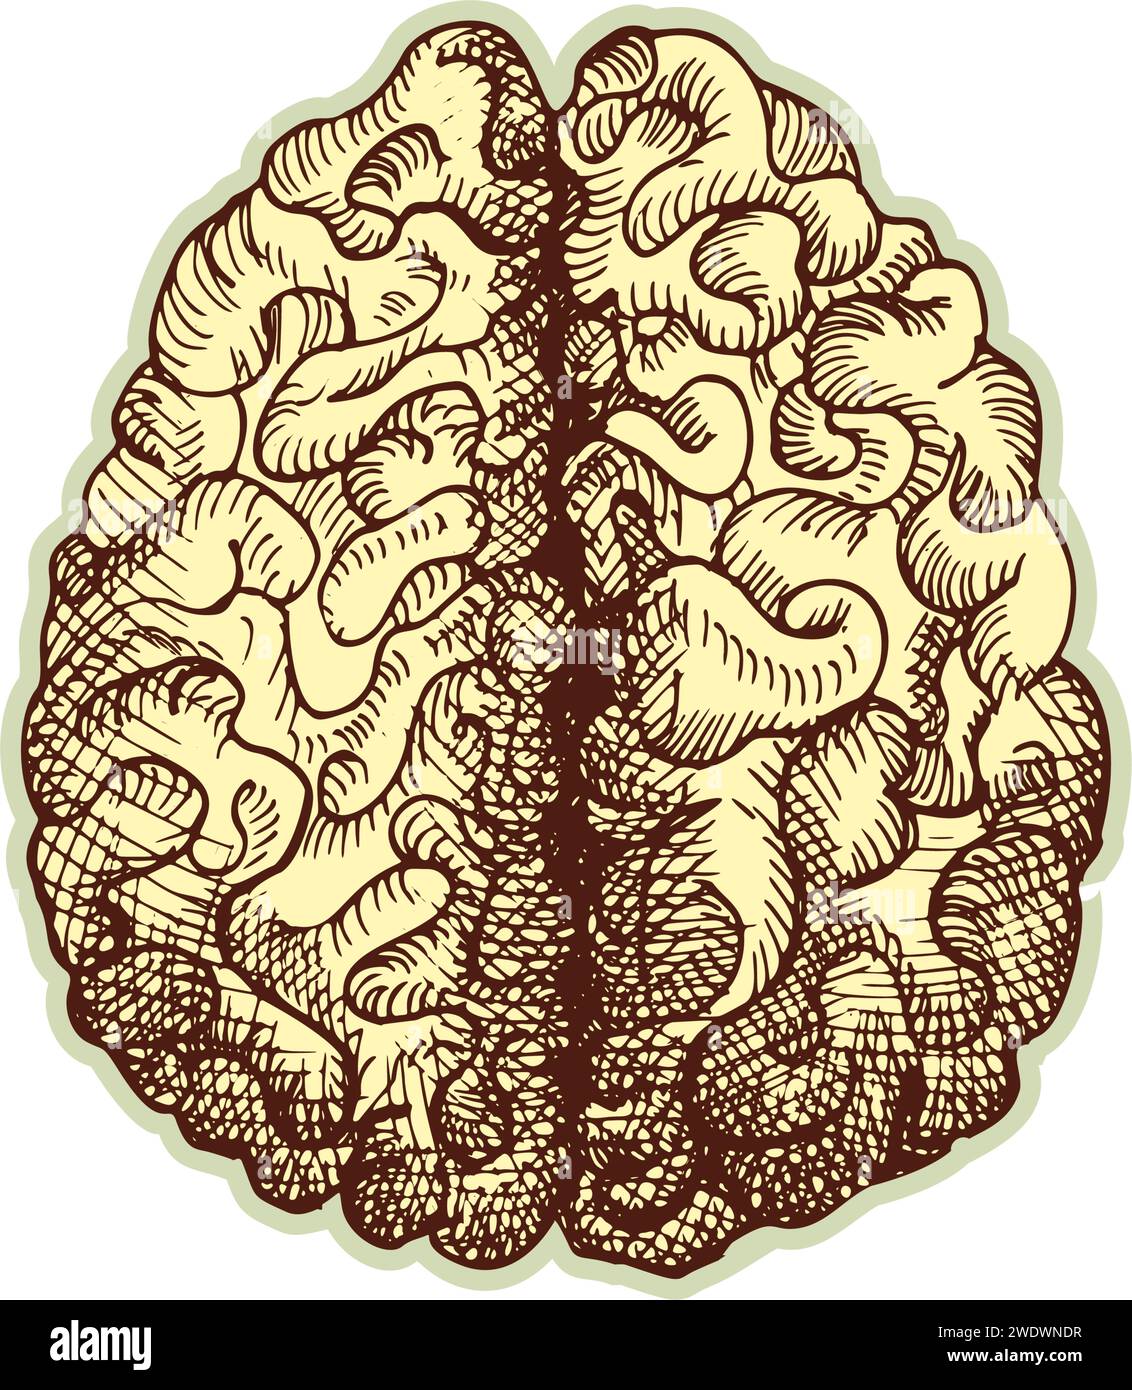 Autocollant du cerveau humain. Vintage anatomie gravure organe esquisse isolé sur fond blanc. Bonne idée pour la conception rétro de l'affiche de médecine à la main dessinée Illustration de Vecteur